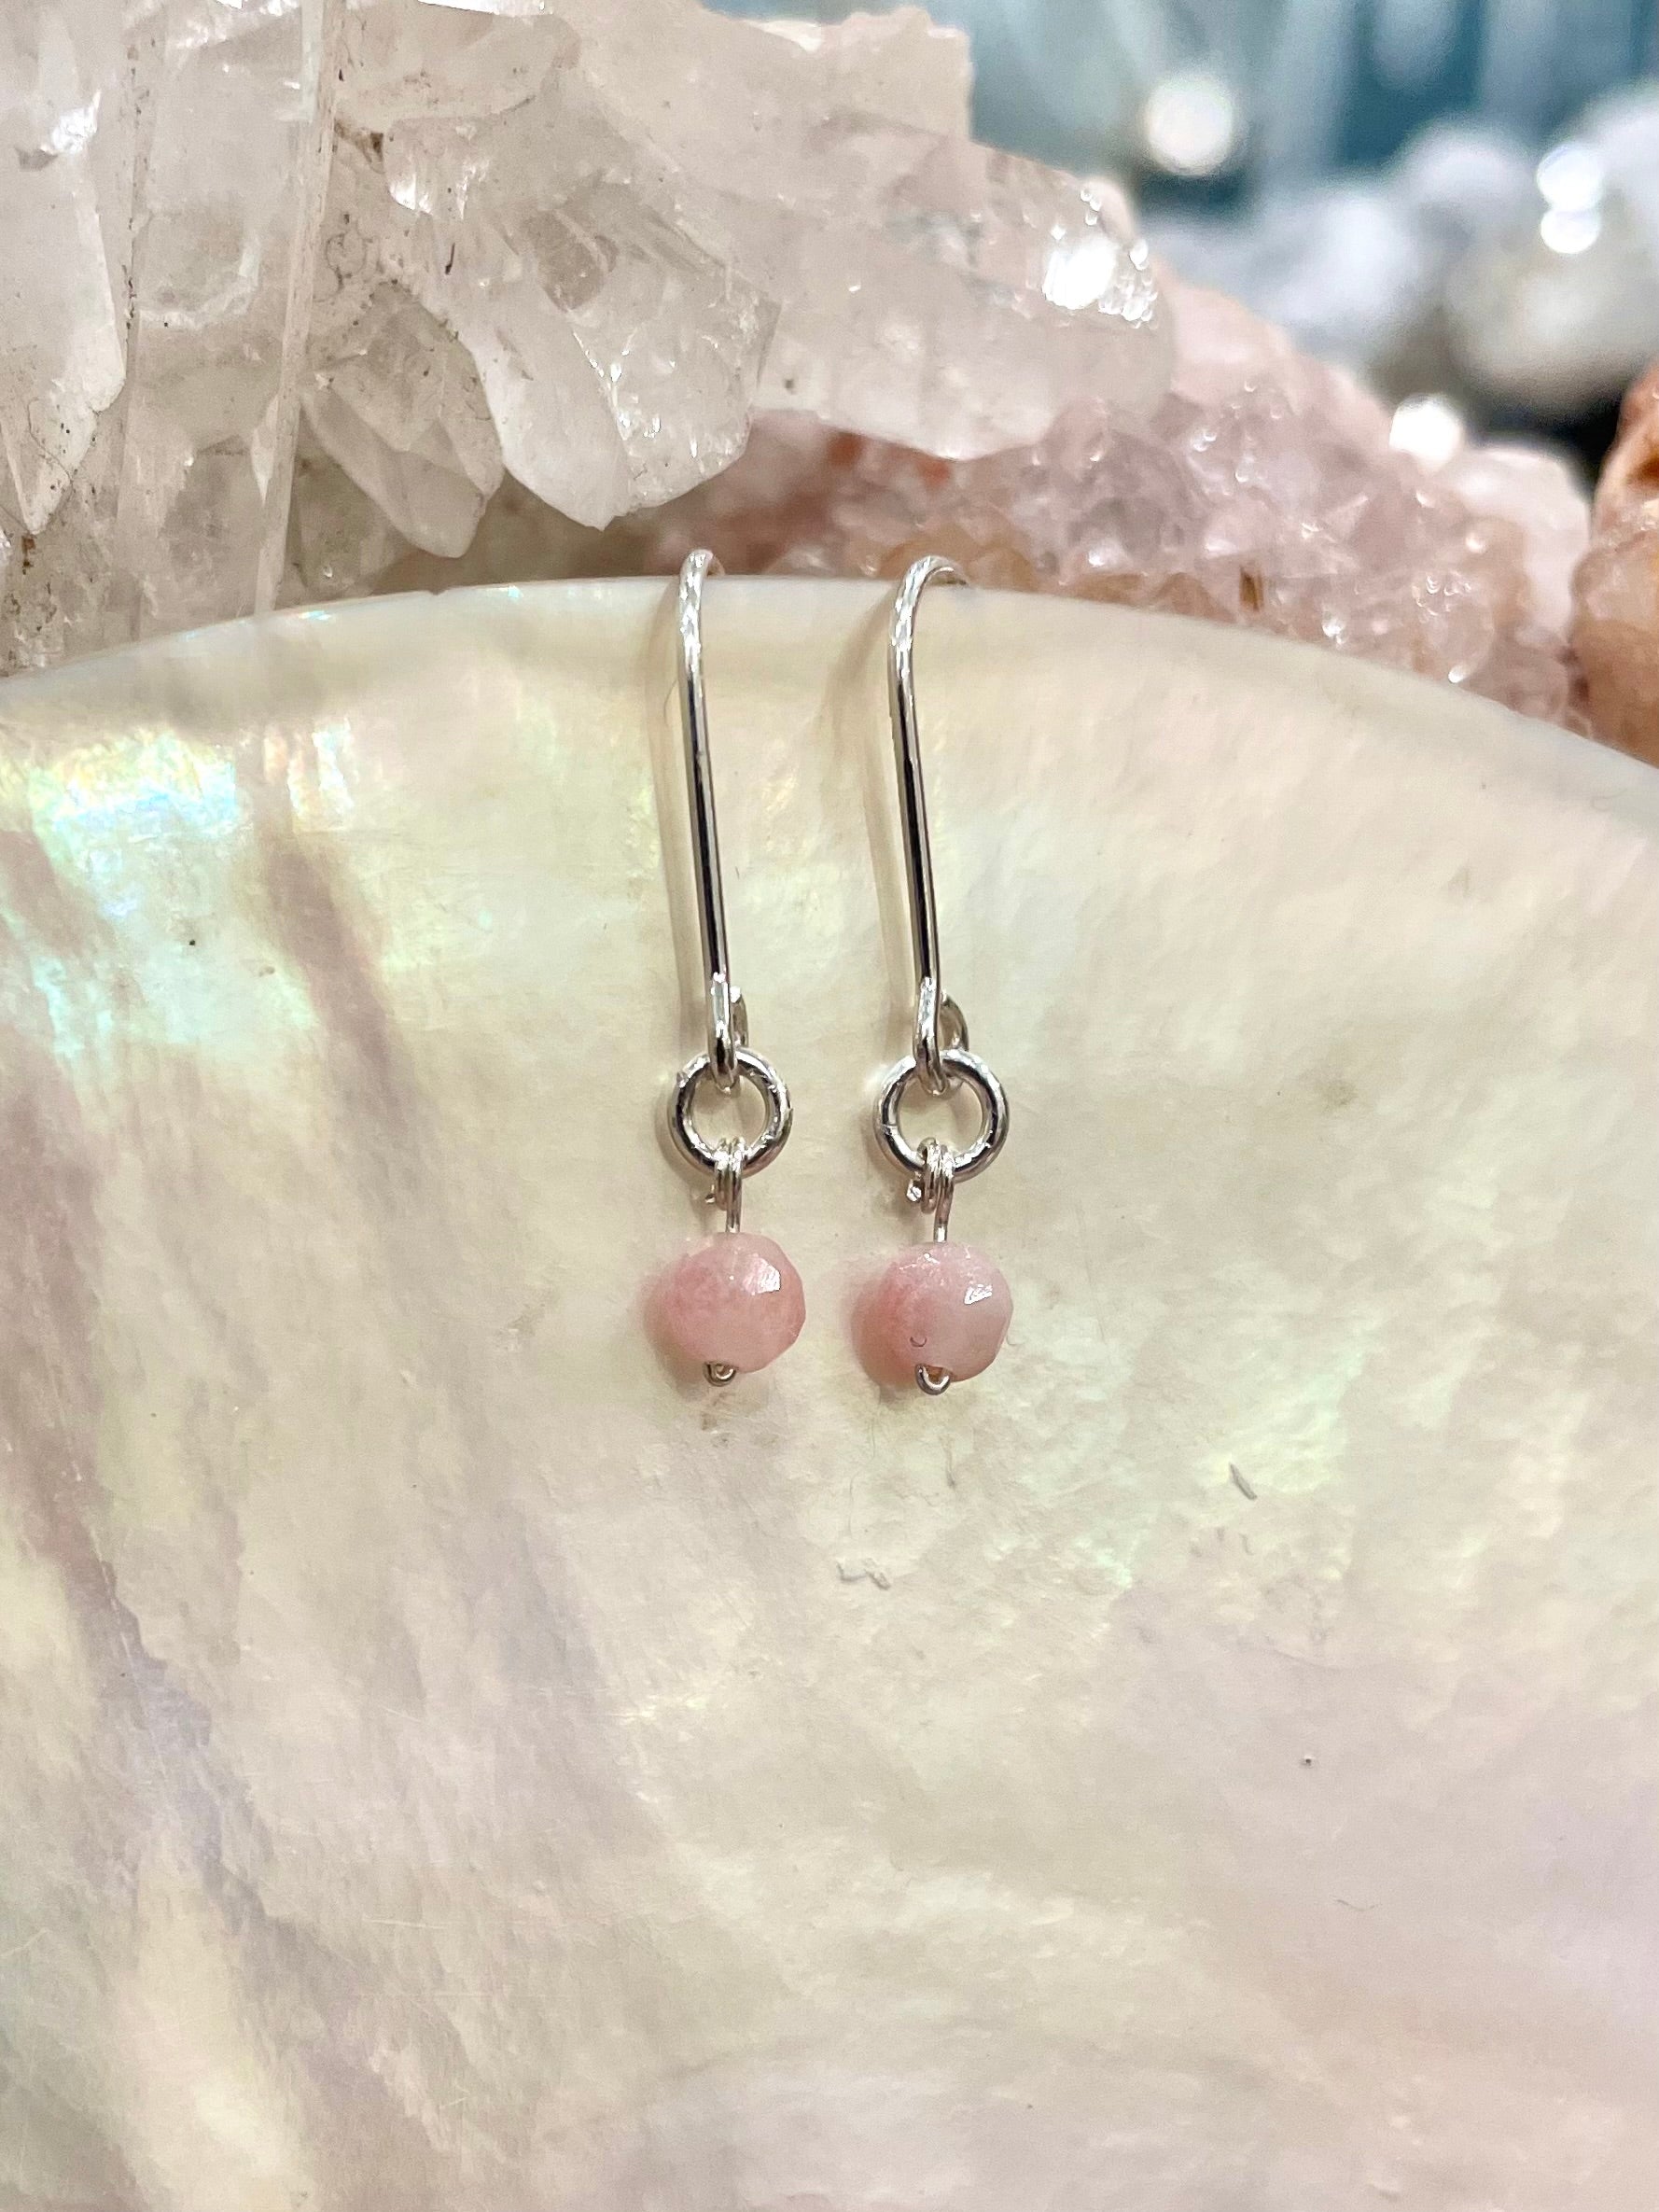 Mini gemstone hook earrings, pink stone earrings, pink opal earrings in silver